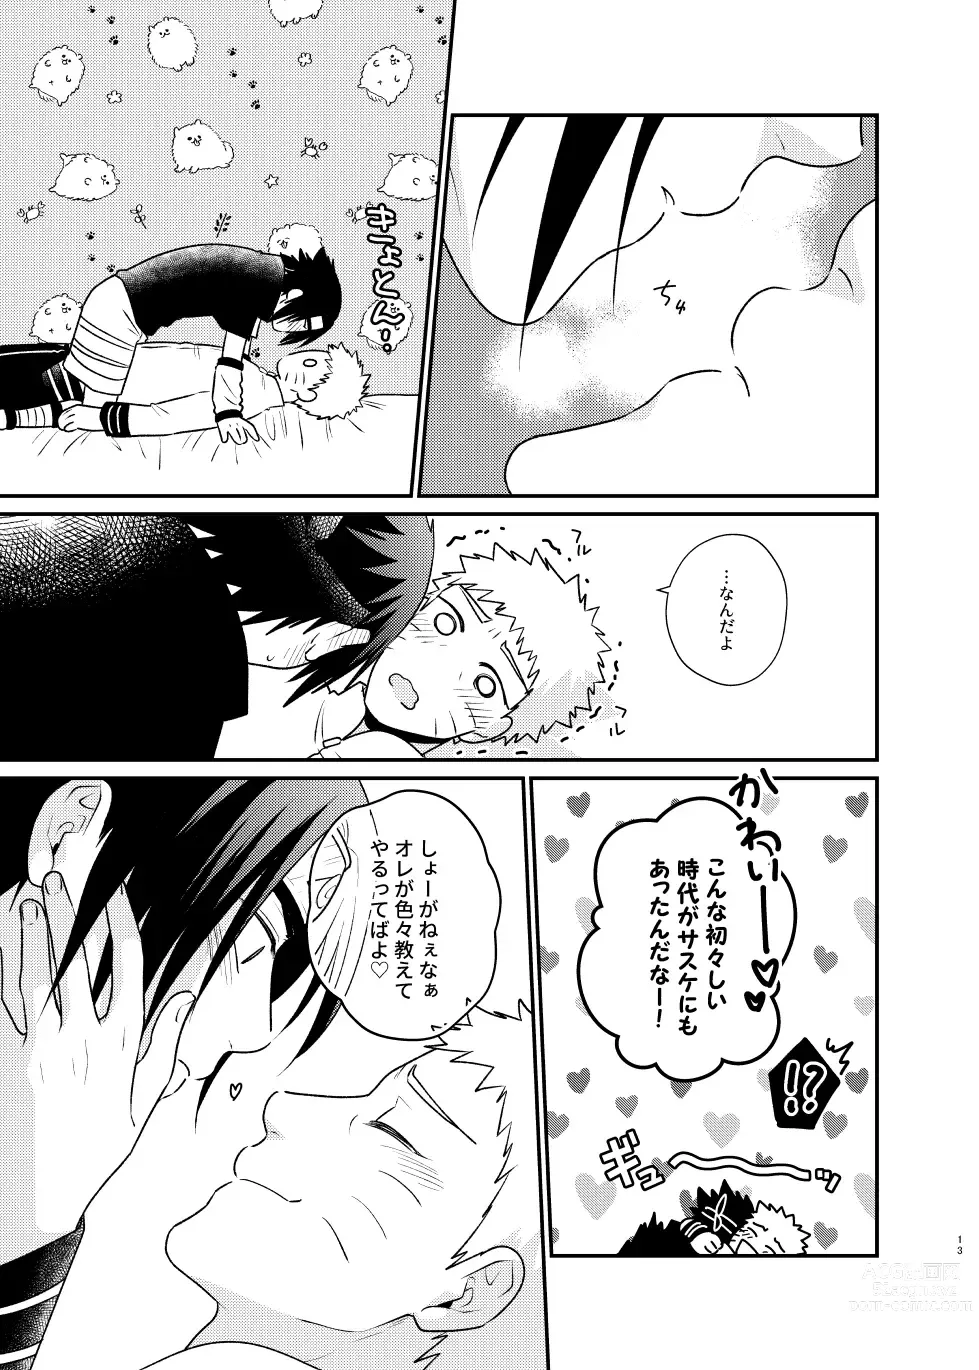 Page 10 of doujinshi Gochamaze 37 ~Rei no Heya ni Tojikomete Okimashita~